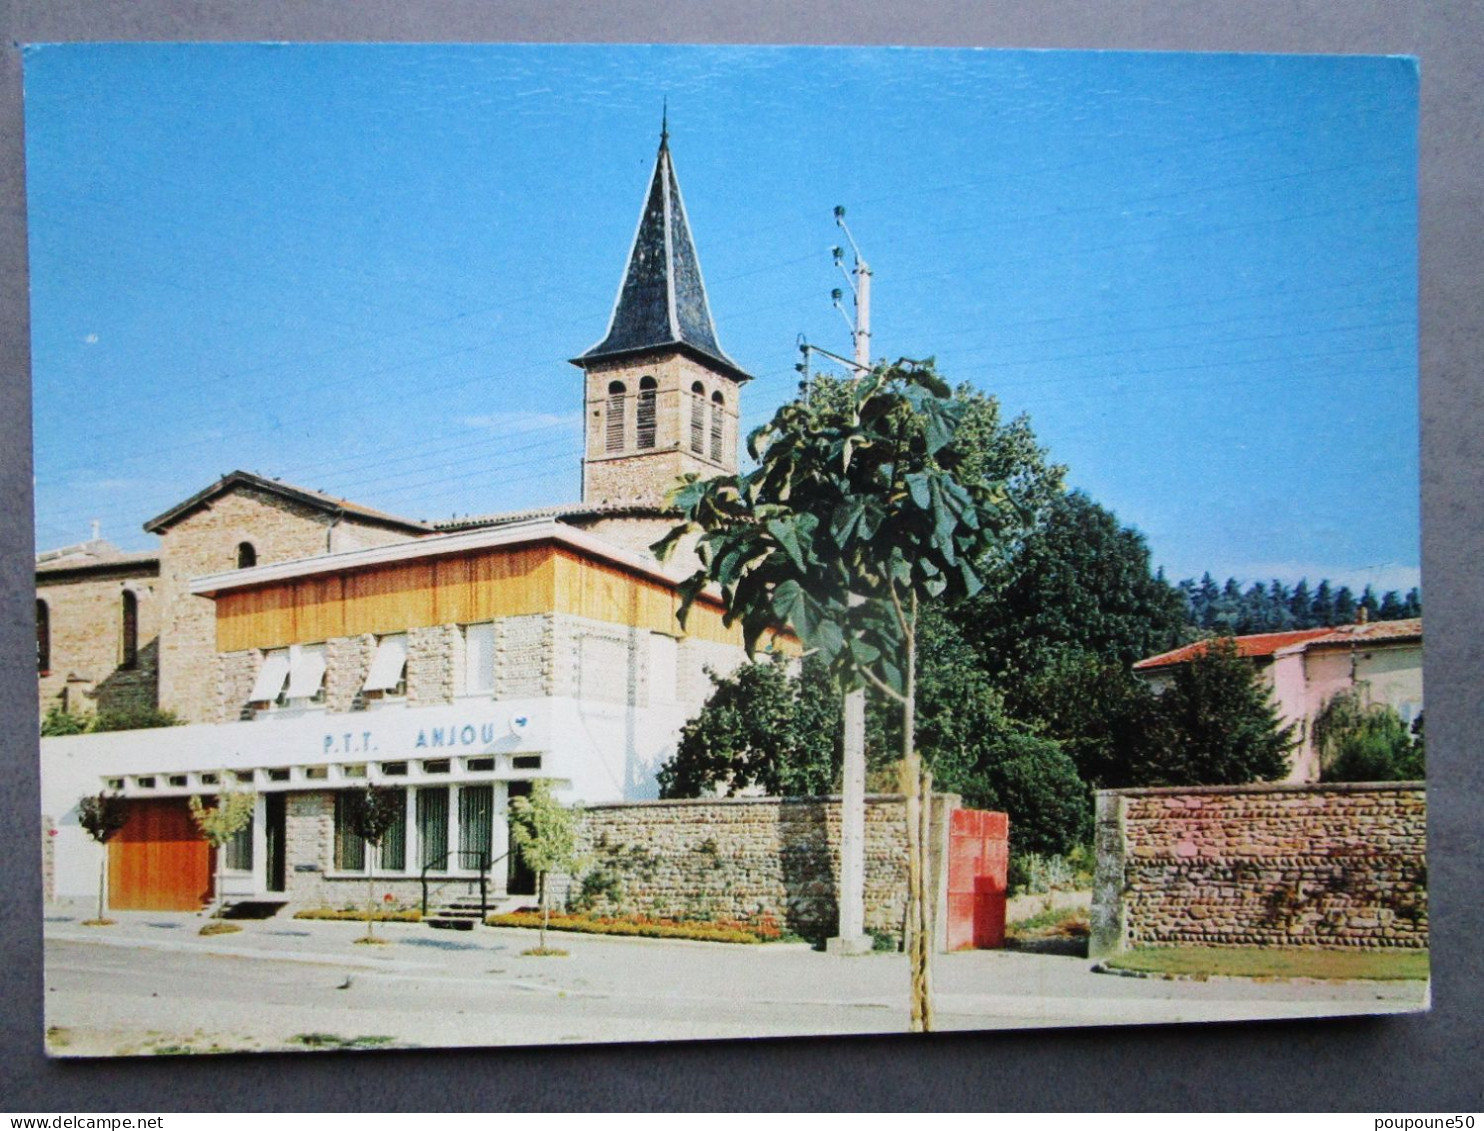 CP 38 Isère ANJOU Prés Roussillon - La Poste P.T.T.  Et L'église Timbrée 1966 - Roussillon